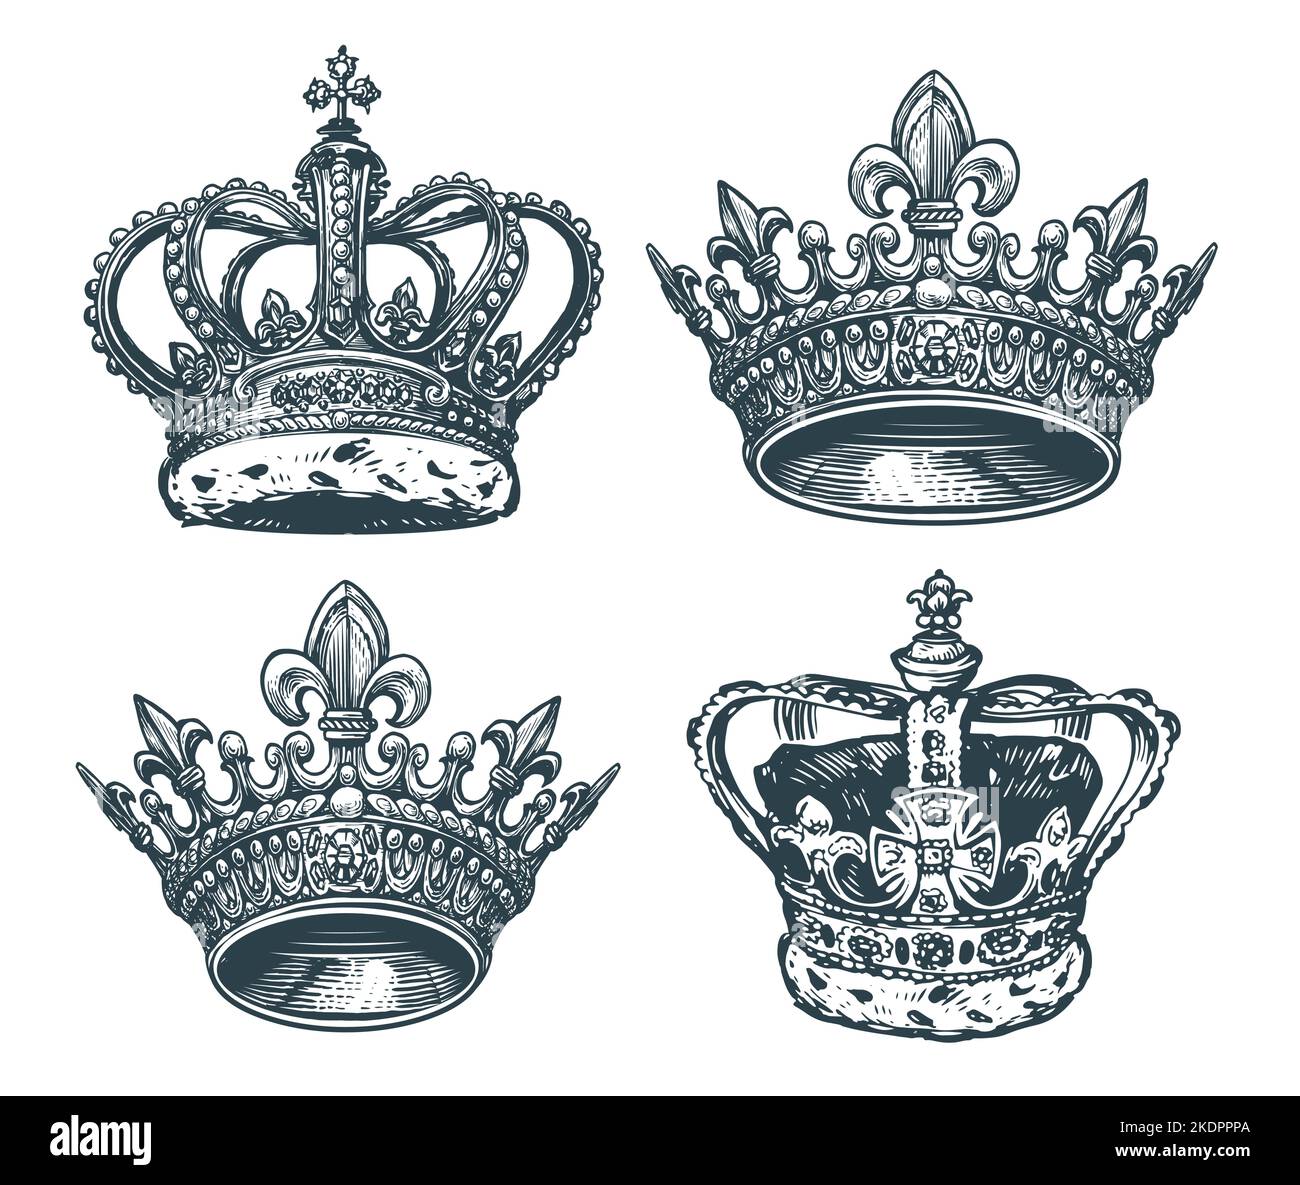 Collezione di corone di regina con disegno piatto